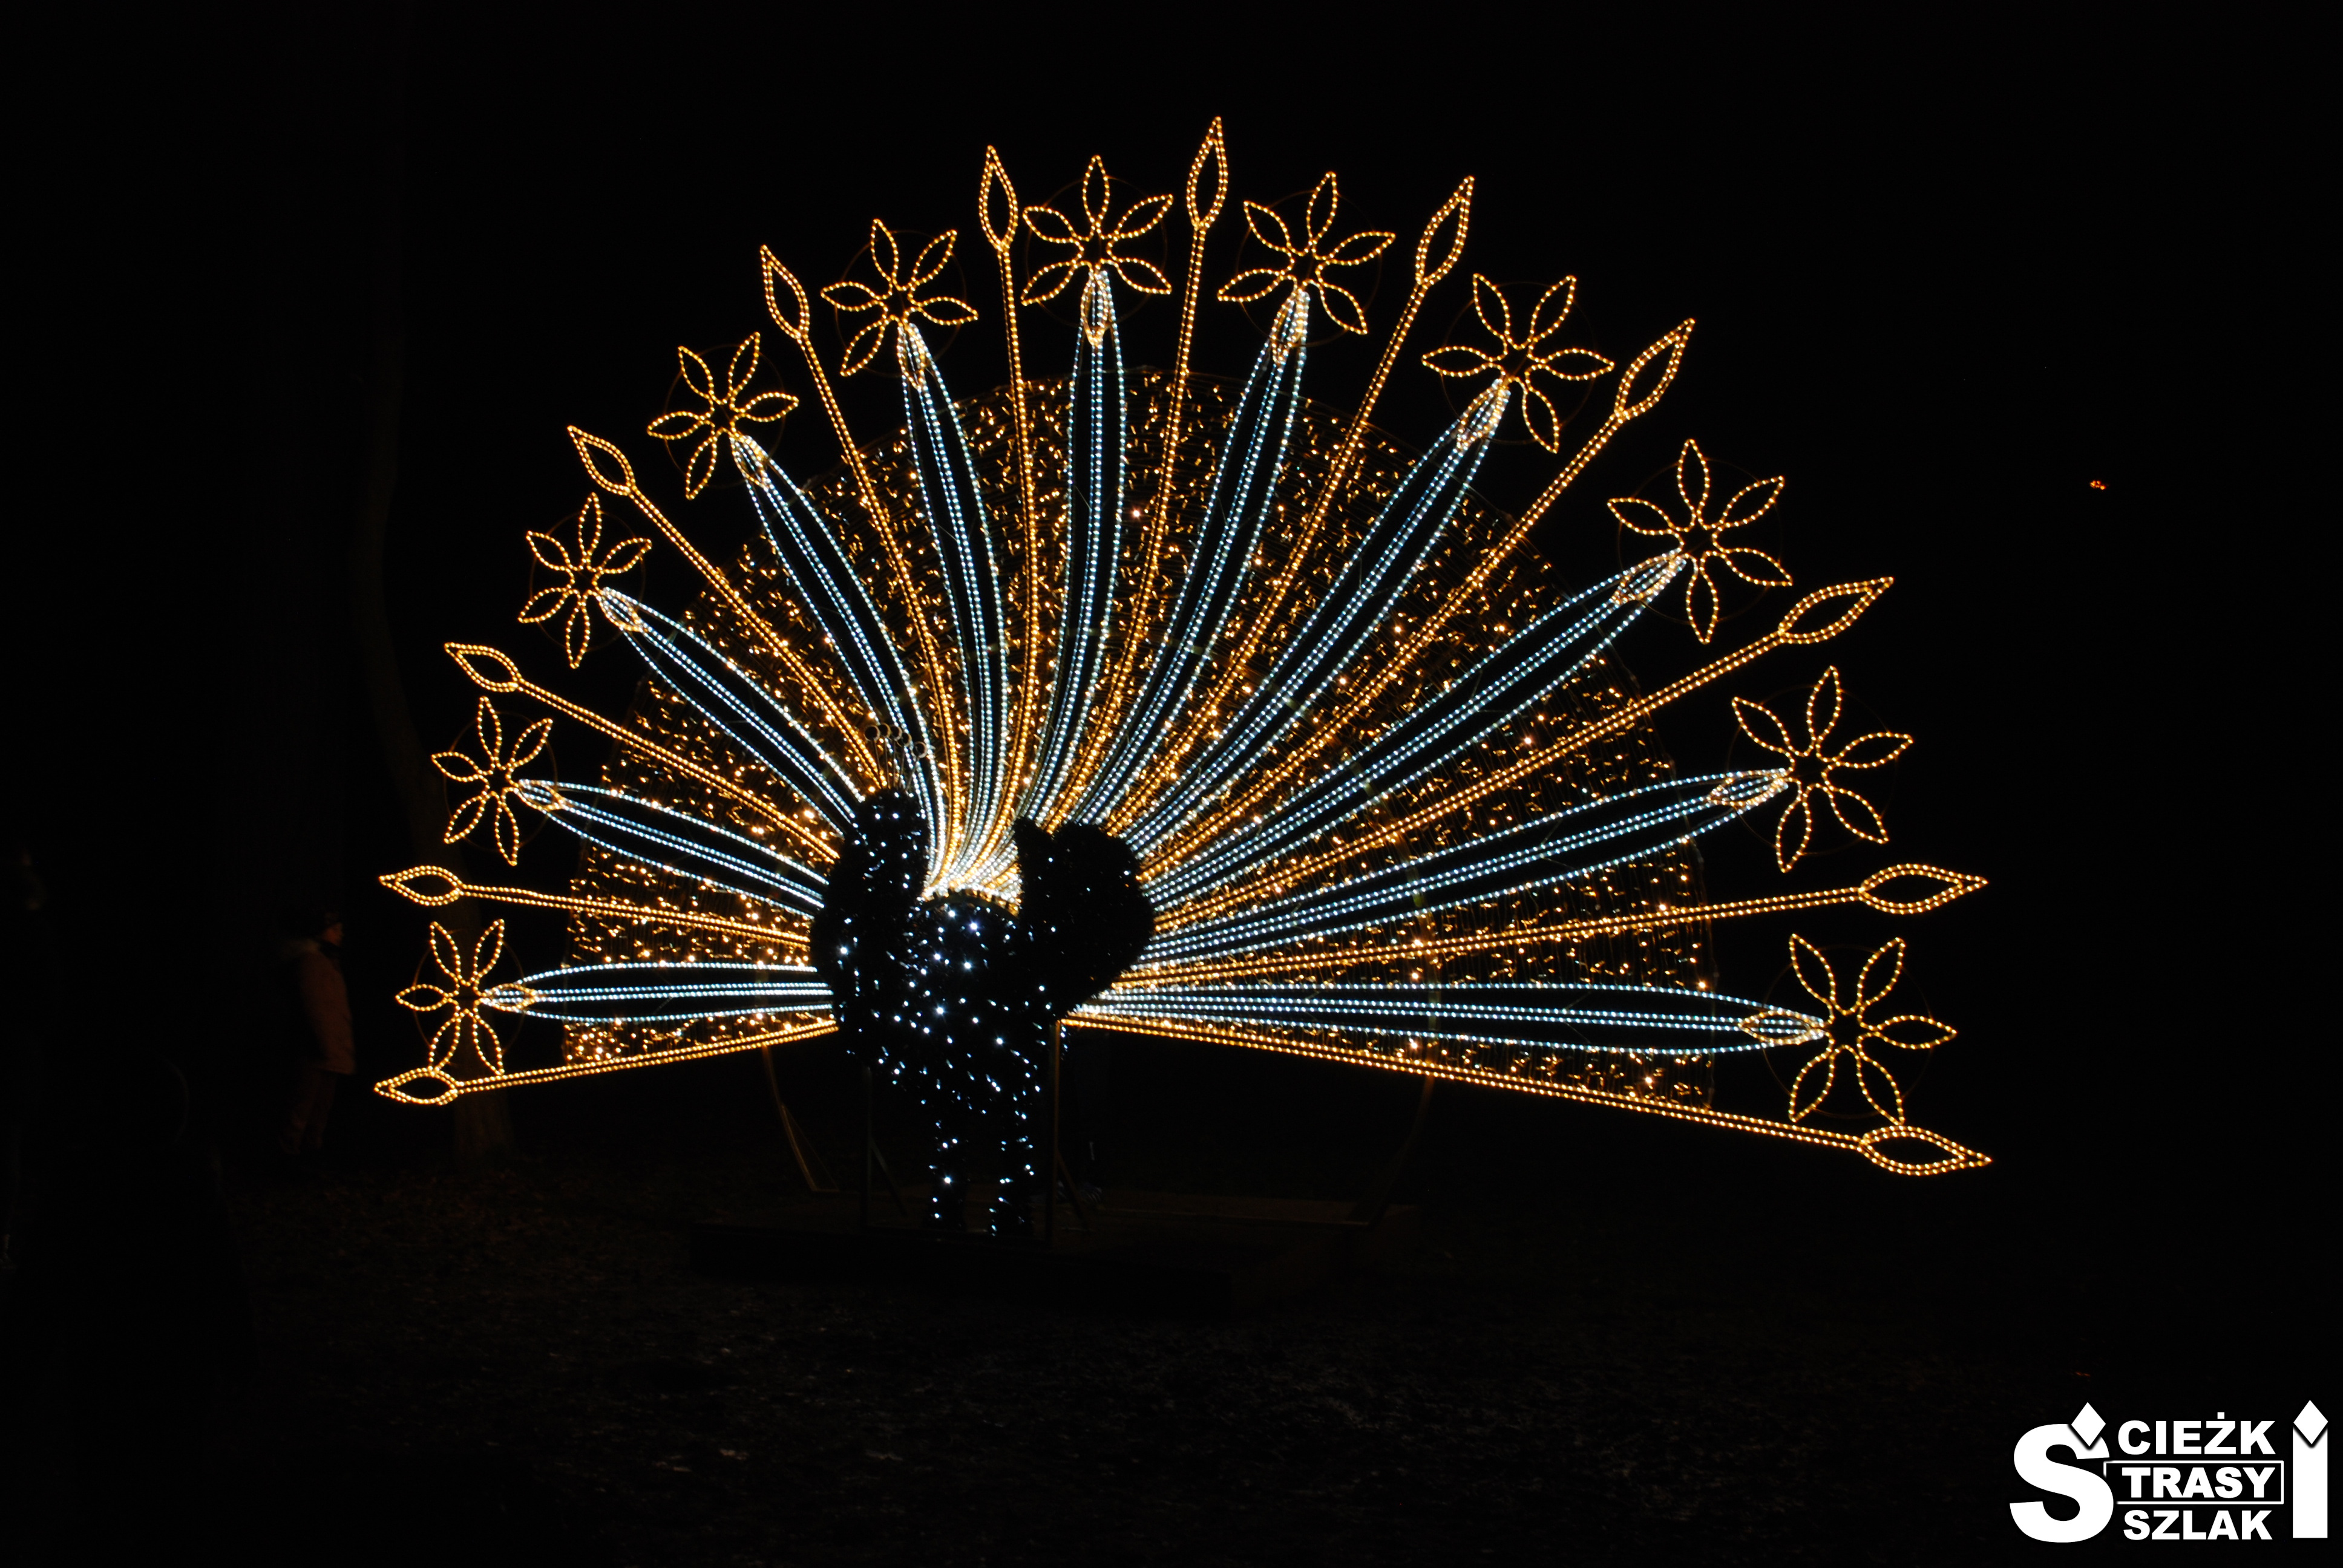 Podświetlony na złoto i biało paw z rozłożonym ogonem w Parku Świateł przy Pałacu w Zatoniu